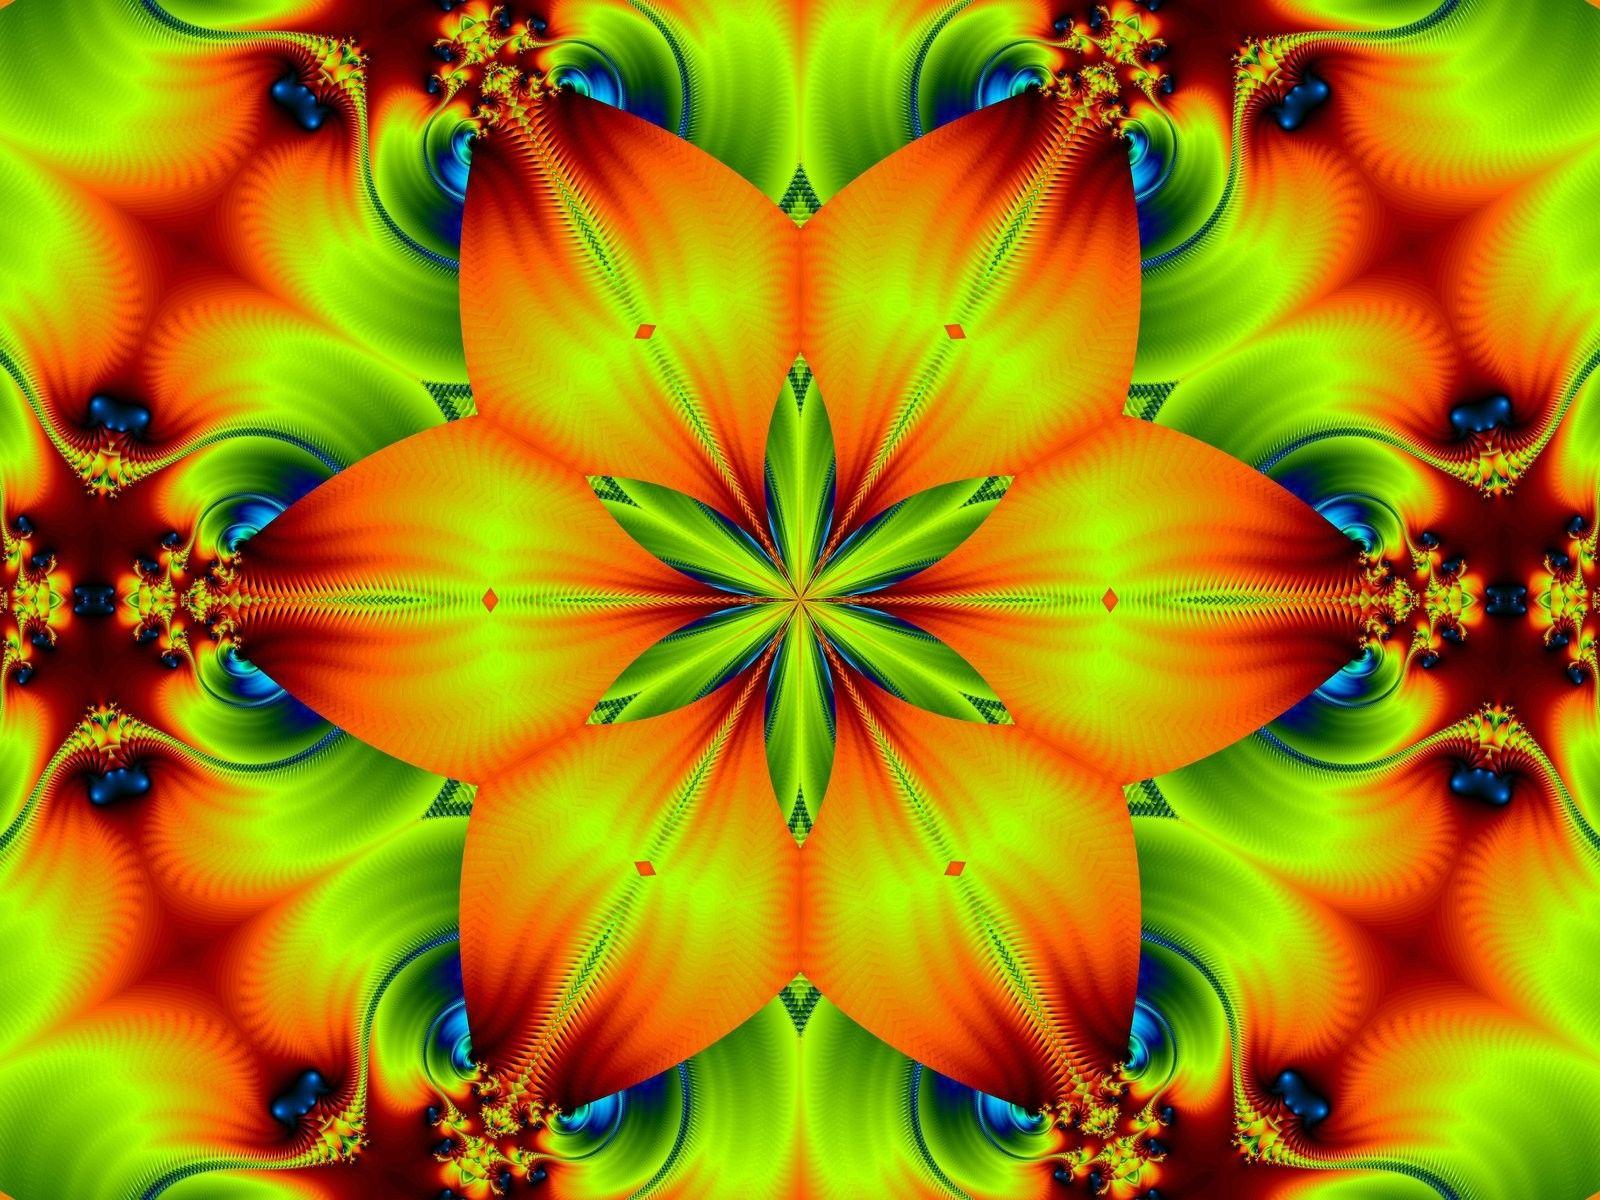 Flower: Fire Flower Splendid Vibrant Scenery Wallpaper HD 16:9 High